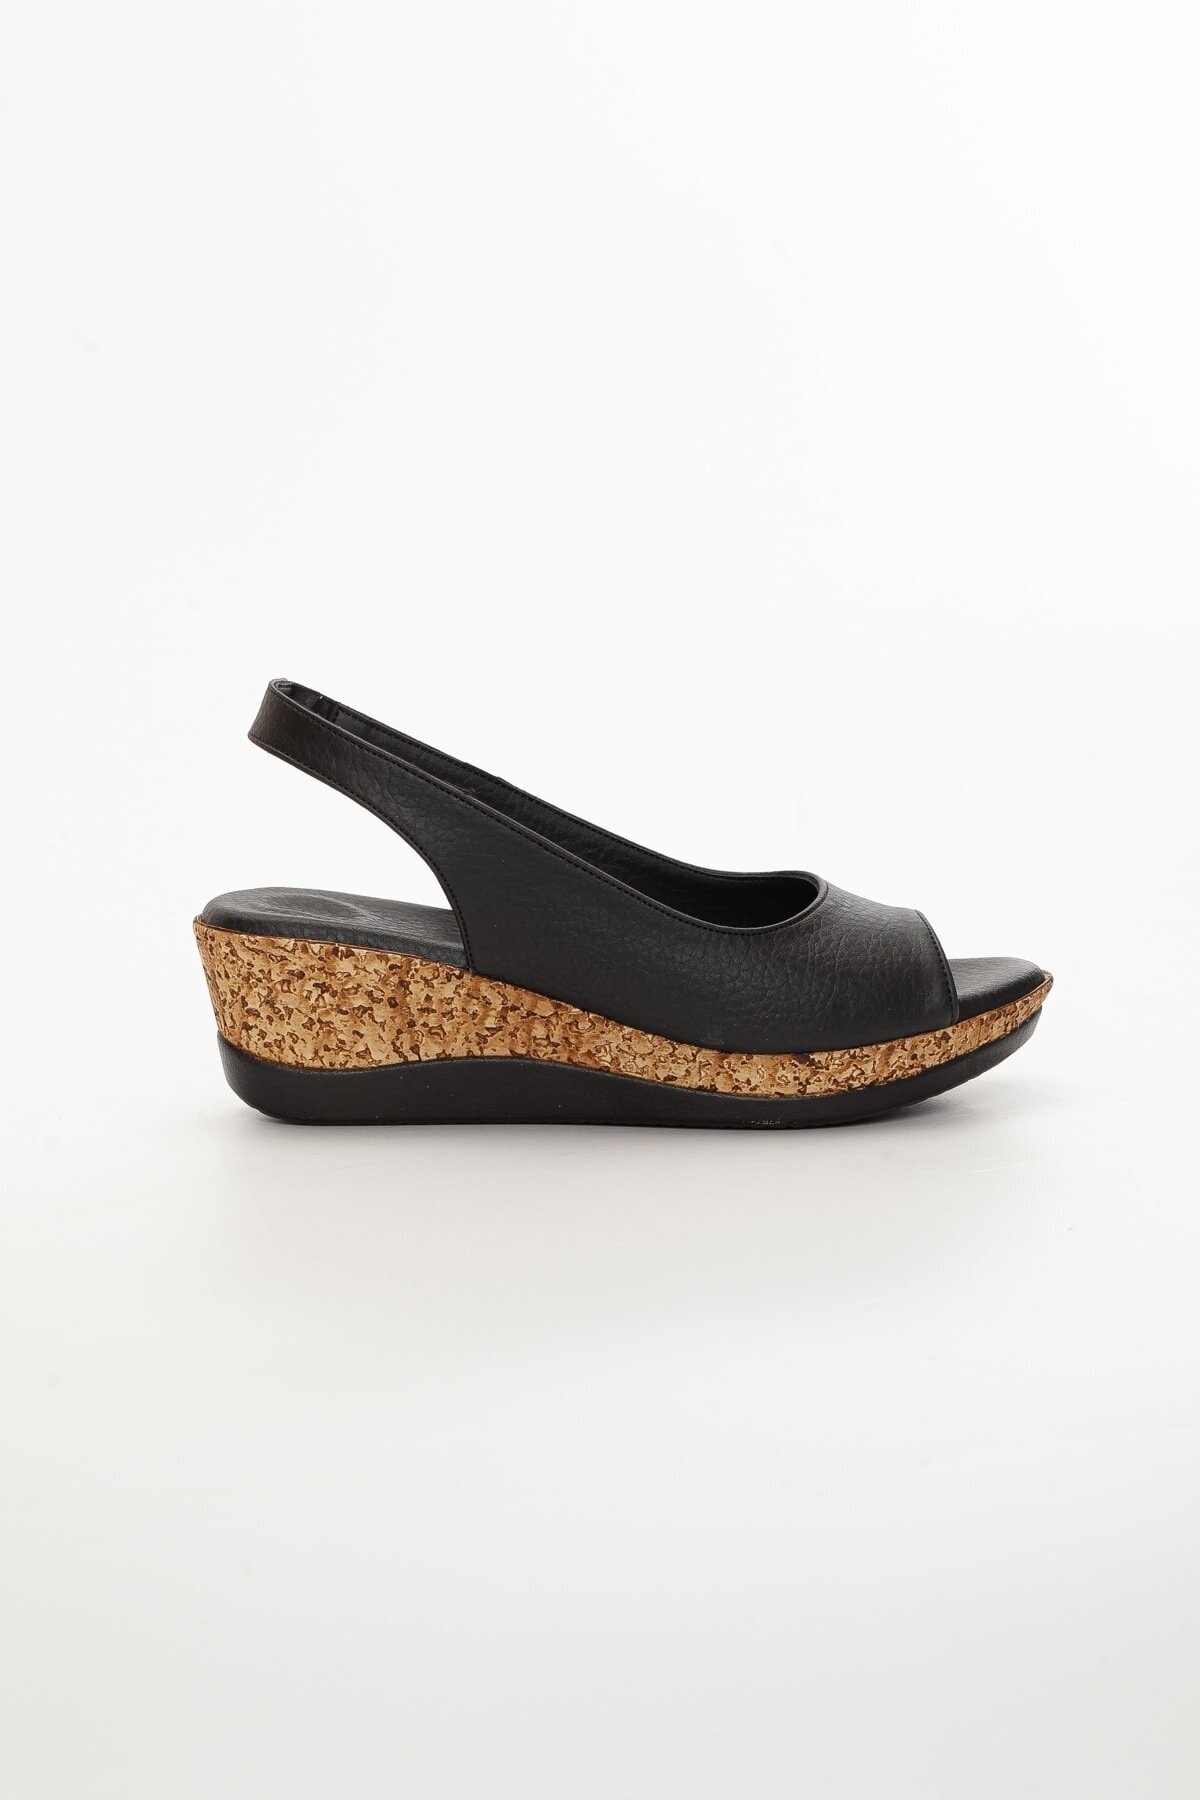 SOFT FASHION Kadın Siyah &amp; Tek Bant Platform Topuklu Açık Yazlık Mantar Sandalet Ayakkabı - Topuk 5 Cm ZN11995